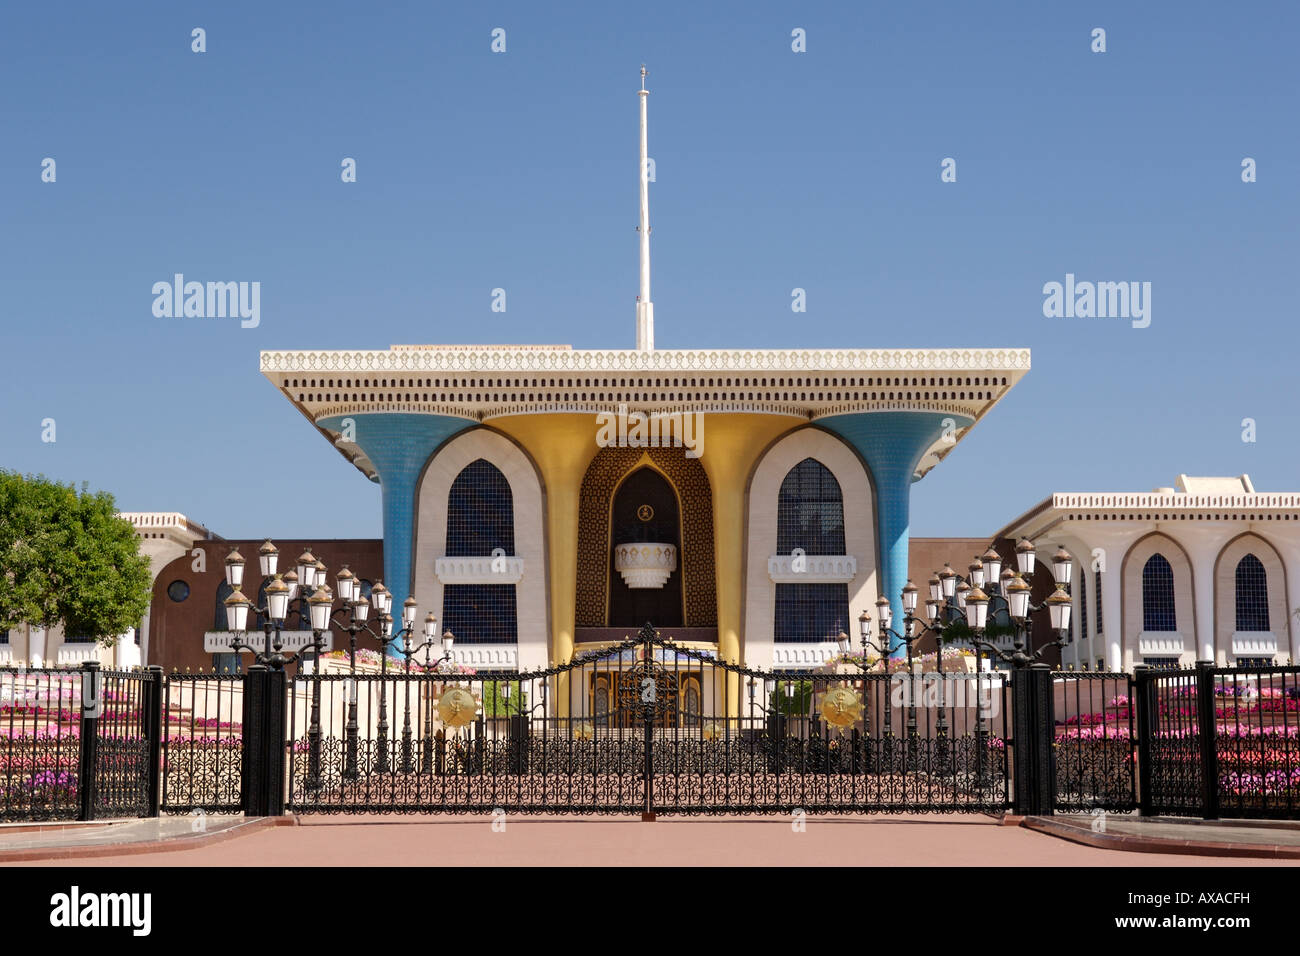 Al Alam Palast in der alten Stadt Maskat. Es gehört zu den königlichen Residenzen von Sultan Qaboos, der Leiter des Sultanats Oman. Stockfoto